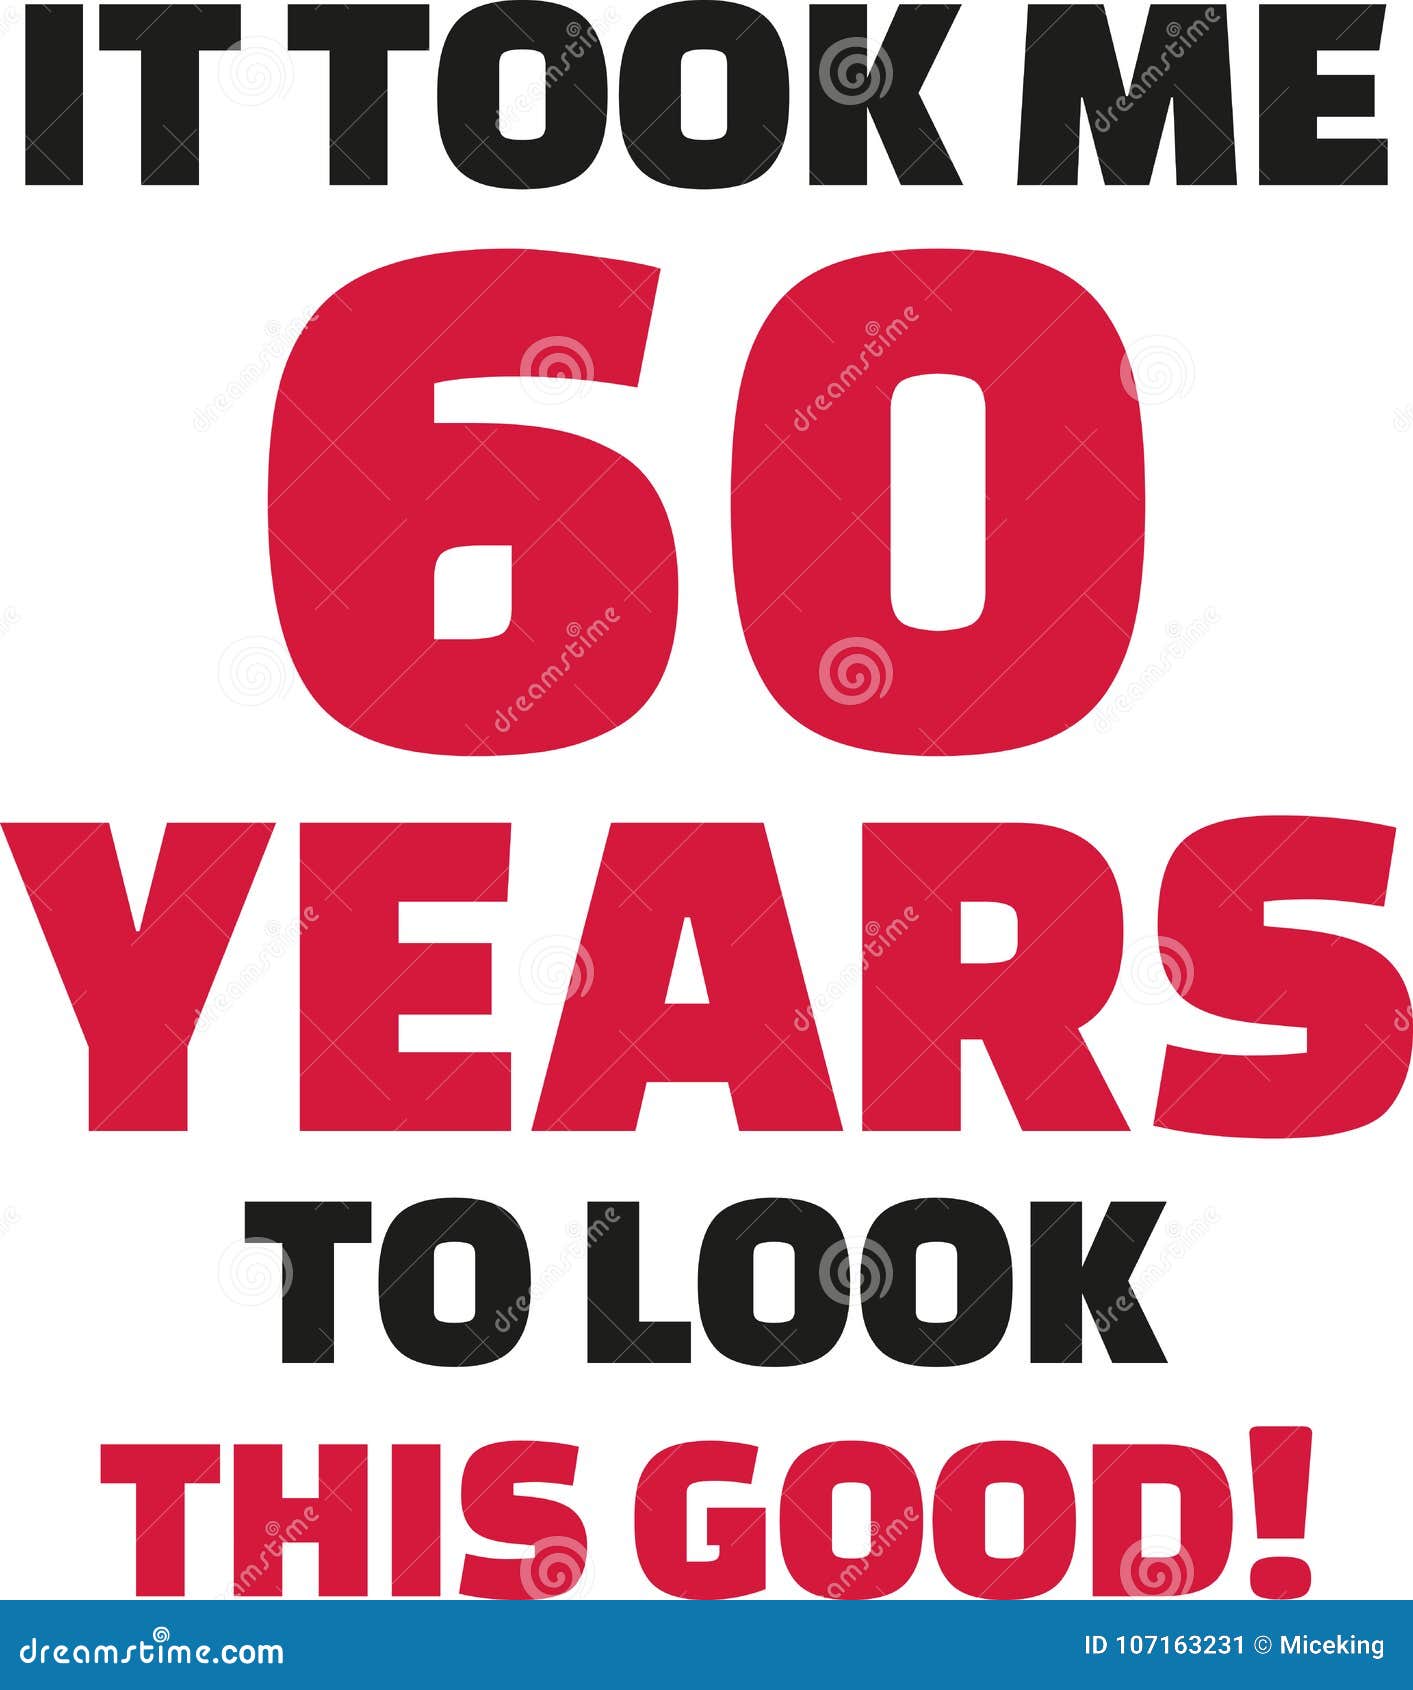 Wonderbaarlijk It Took Me 60 Years To Look This Good - 60th Birthday Stock Vector OR-11